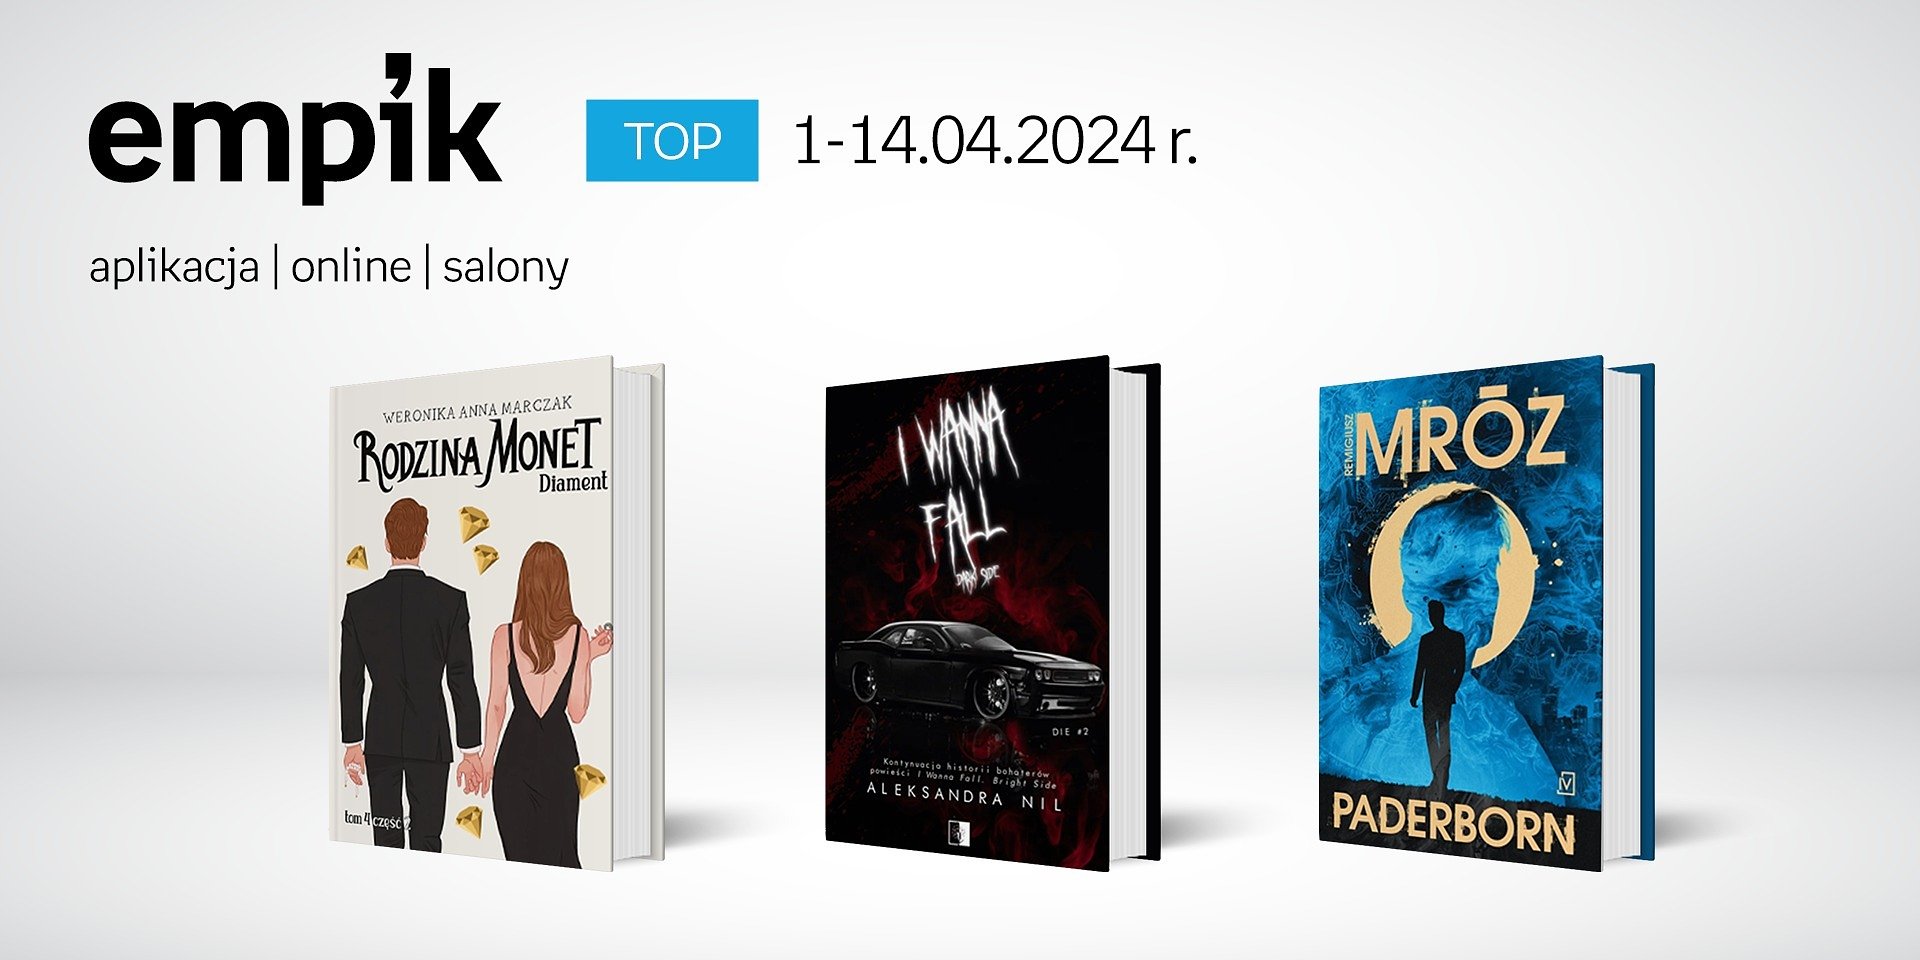 Książkowe listy bestsellerów w Empiku za okres 1-14.04.2024 r.